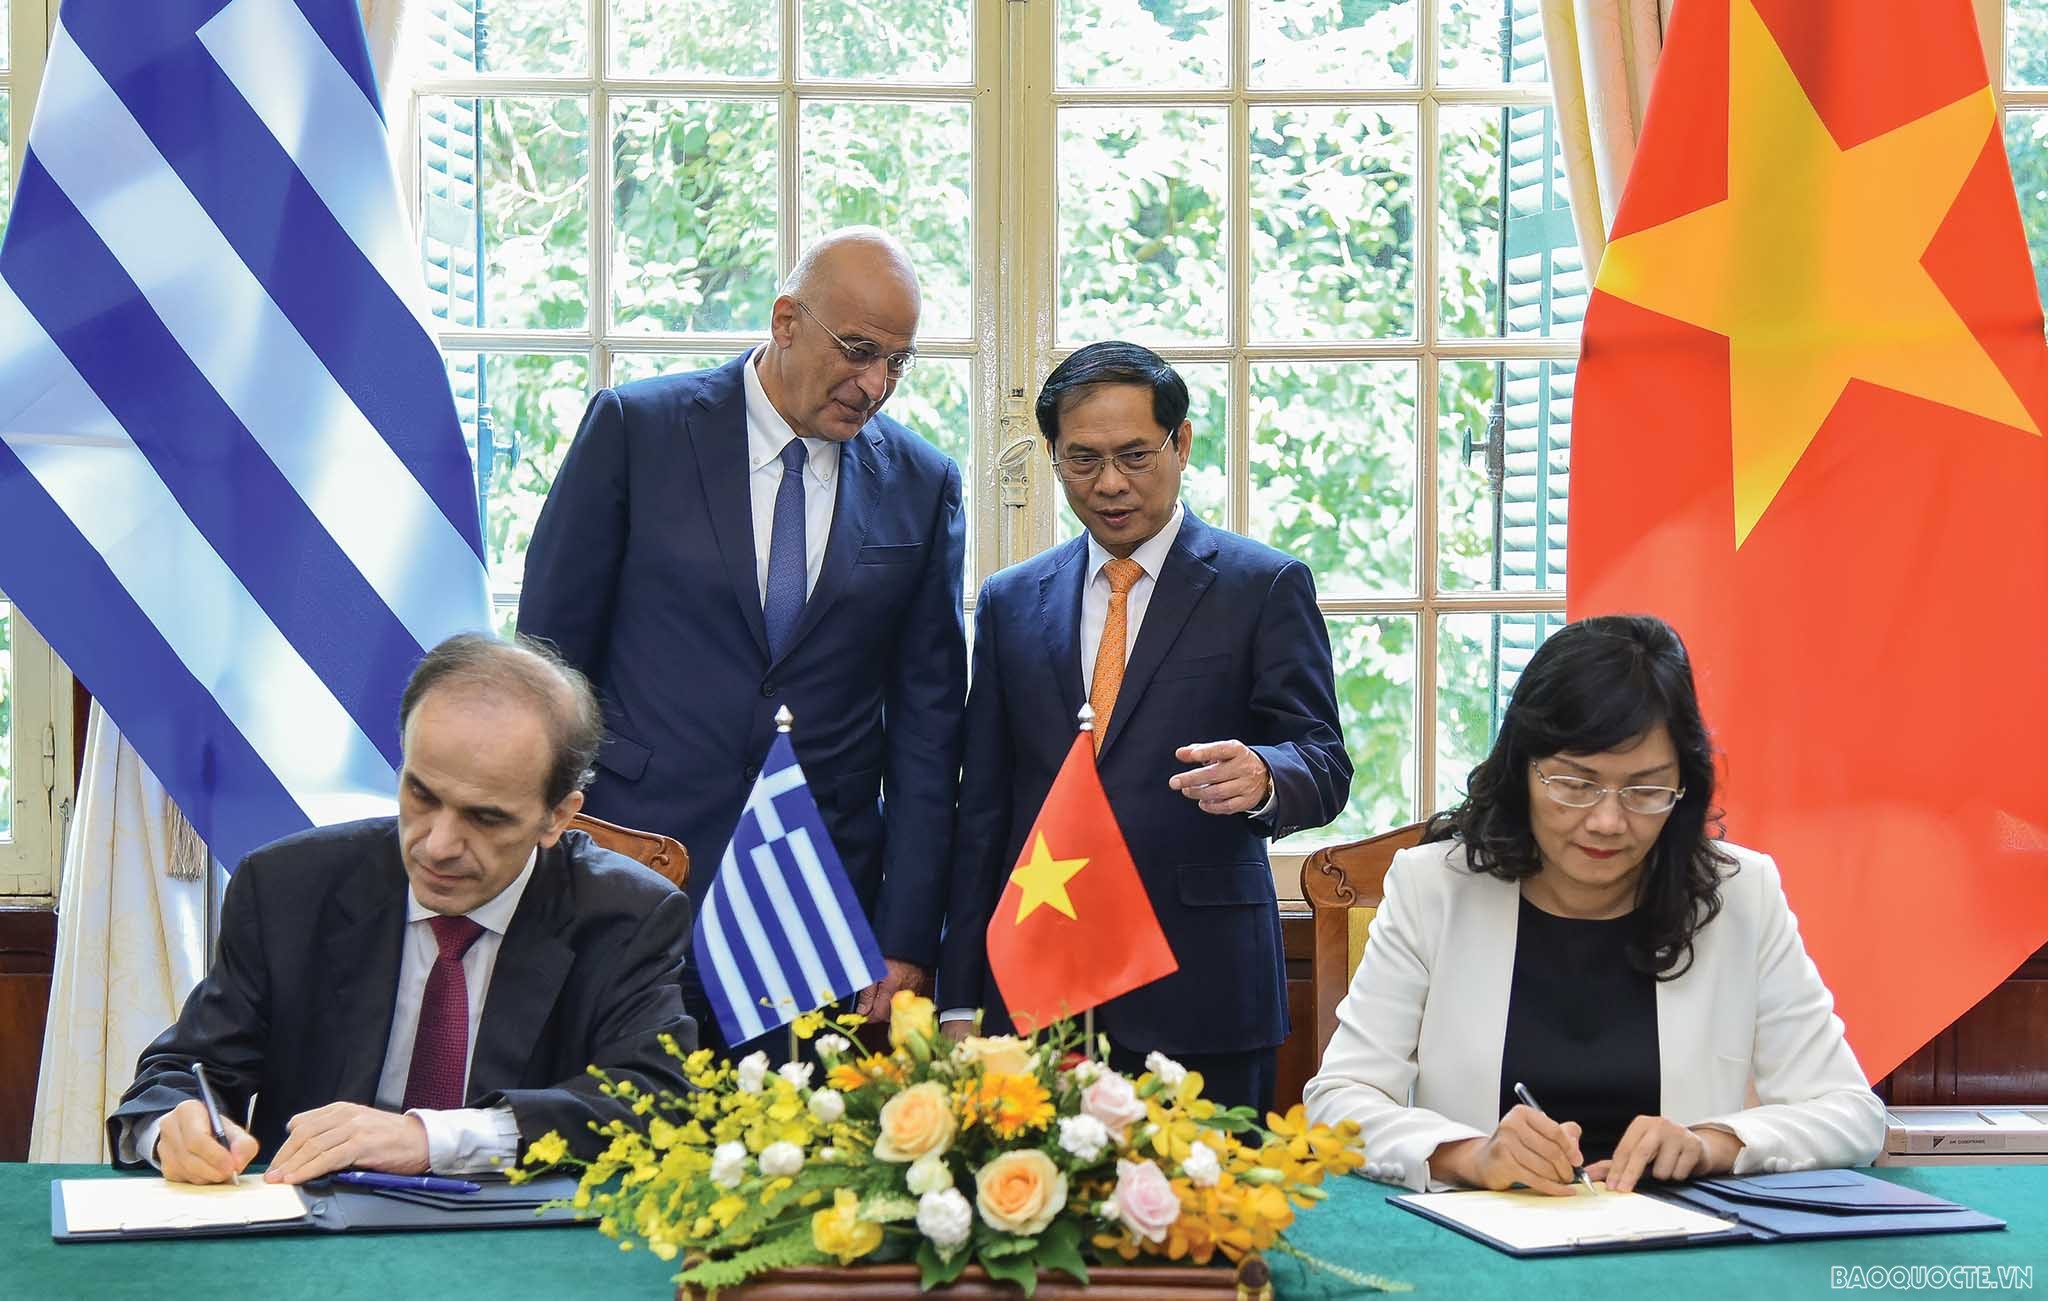 Nhân dịp này, hai Bộ trưởng cũng chứng kiến lễ ký kết Bản ghi nhớ về hợp tác trong lĩnh vực đào tạo cán bộ ngoại giao giữa Học viện Ngoại giao Việt Nam và Học viện Ngoại giao Hy Lạp.